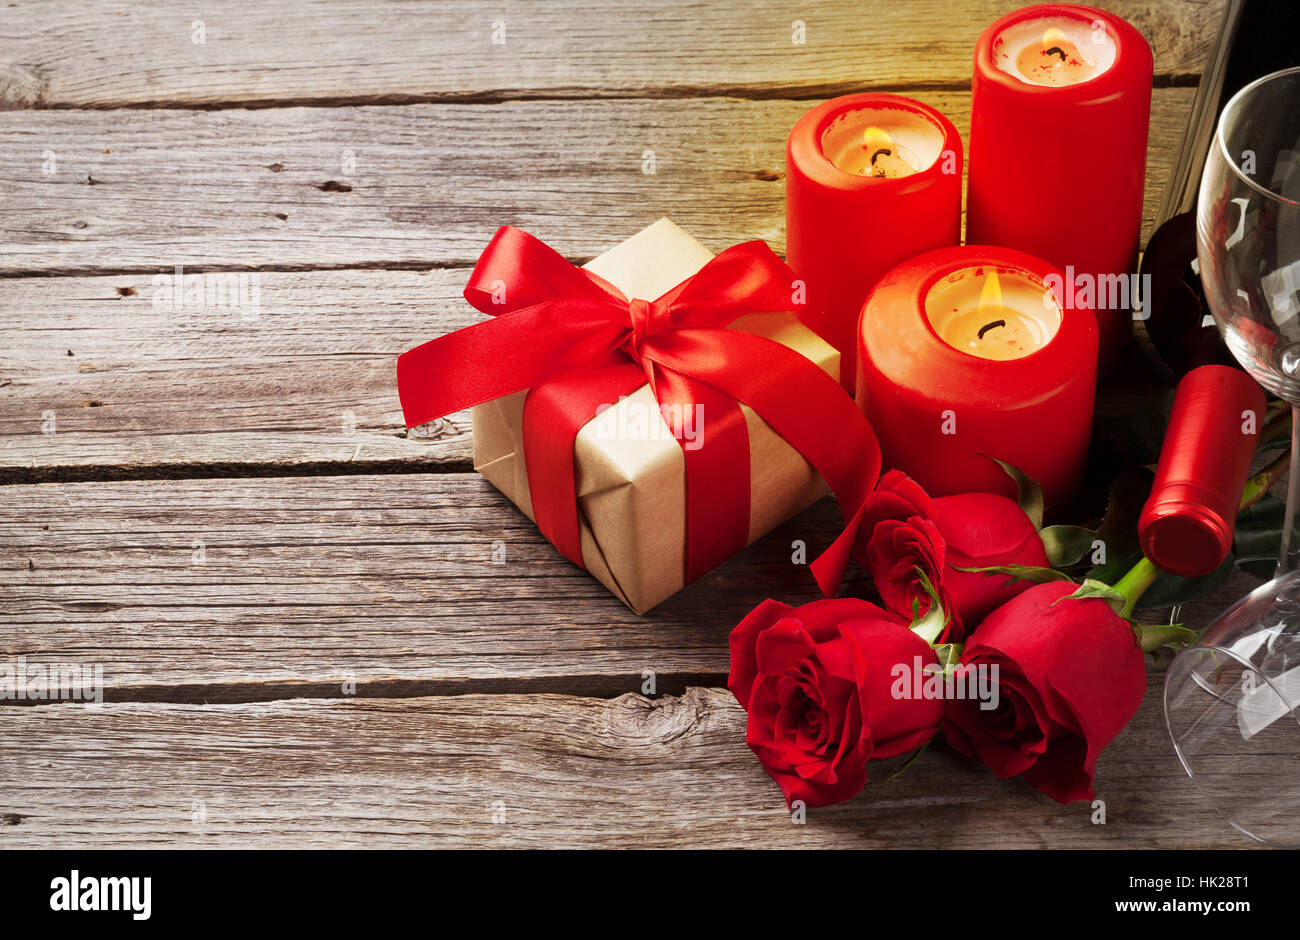 Valentinstag-Grußkarte. Rote Rosen-Blumen, Wein, Geschenk-Box und Kerzen auf Holztisch. Mit Platz für Ihre Grüße Stockfoto